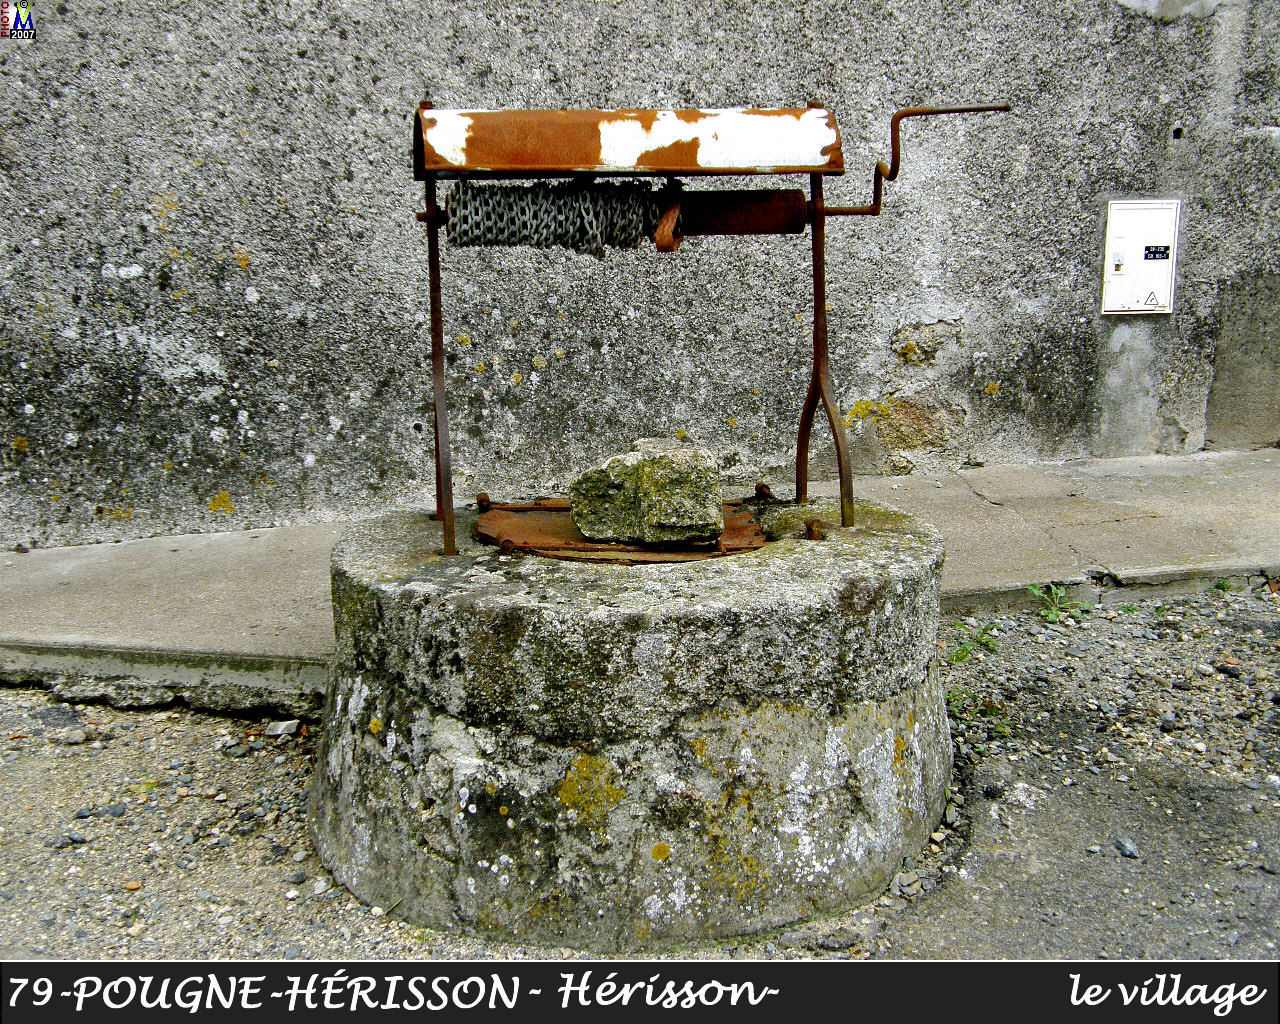 79POUGNE-HERISSON_herisson_village_120.jpg